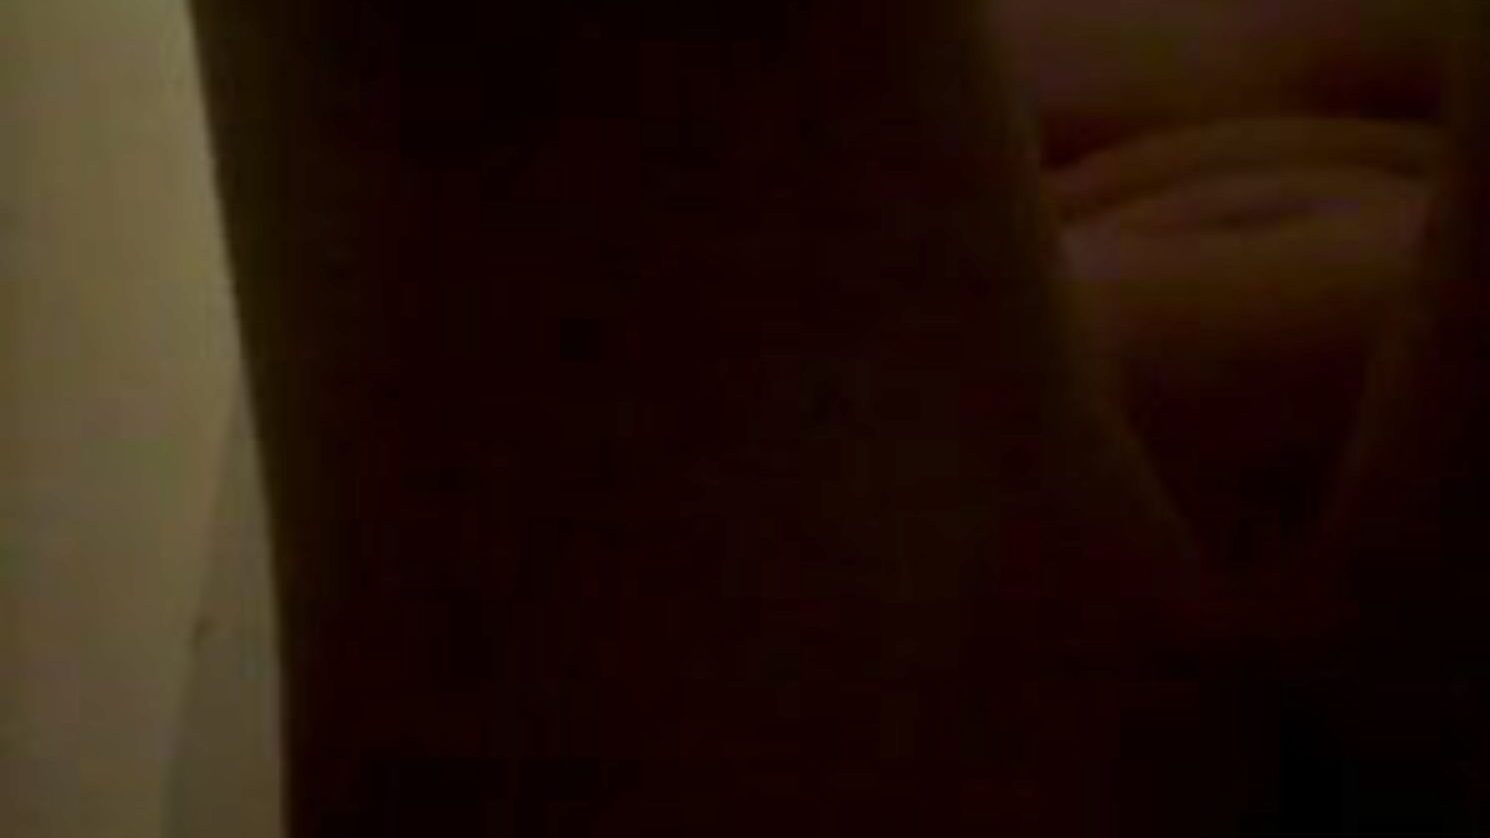 piss et frotte sur le corps, free pee porn 45: xhamster guarda piss et frotte sur le corps clip su xhamster, il sito web di tube di orgia più grasso con tonnellate di pipì gratis per tutti e scene di film porno fatti in casa